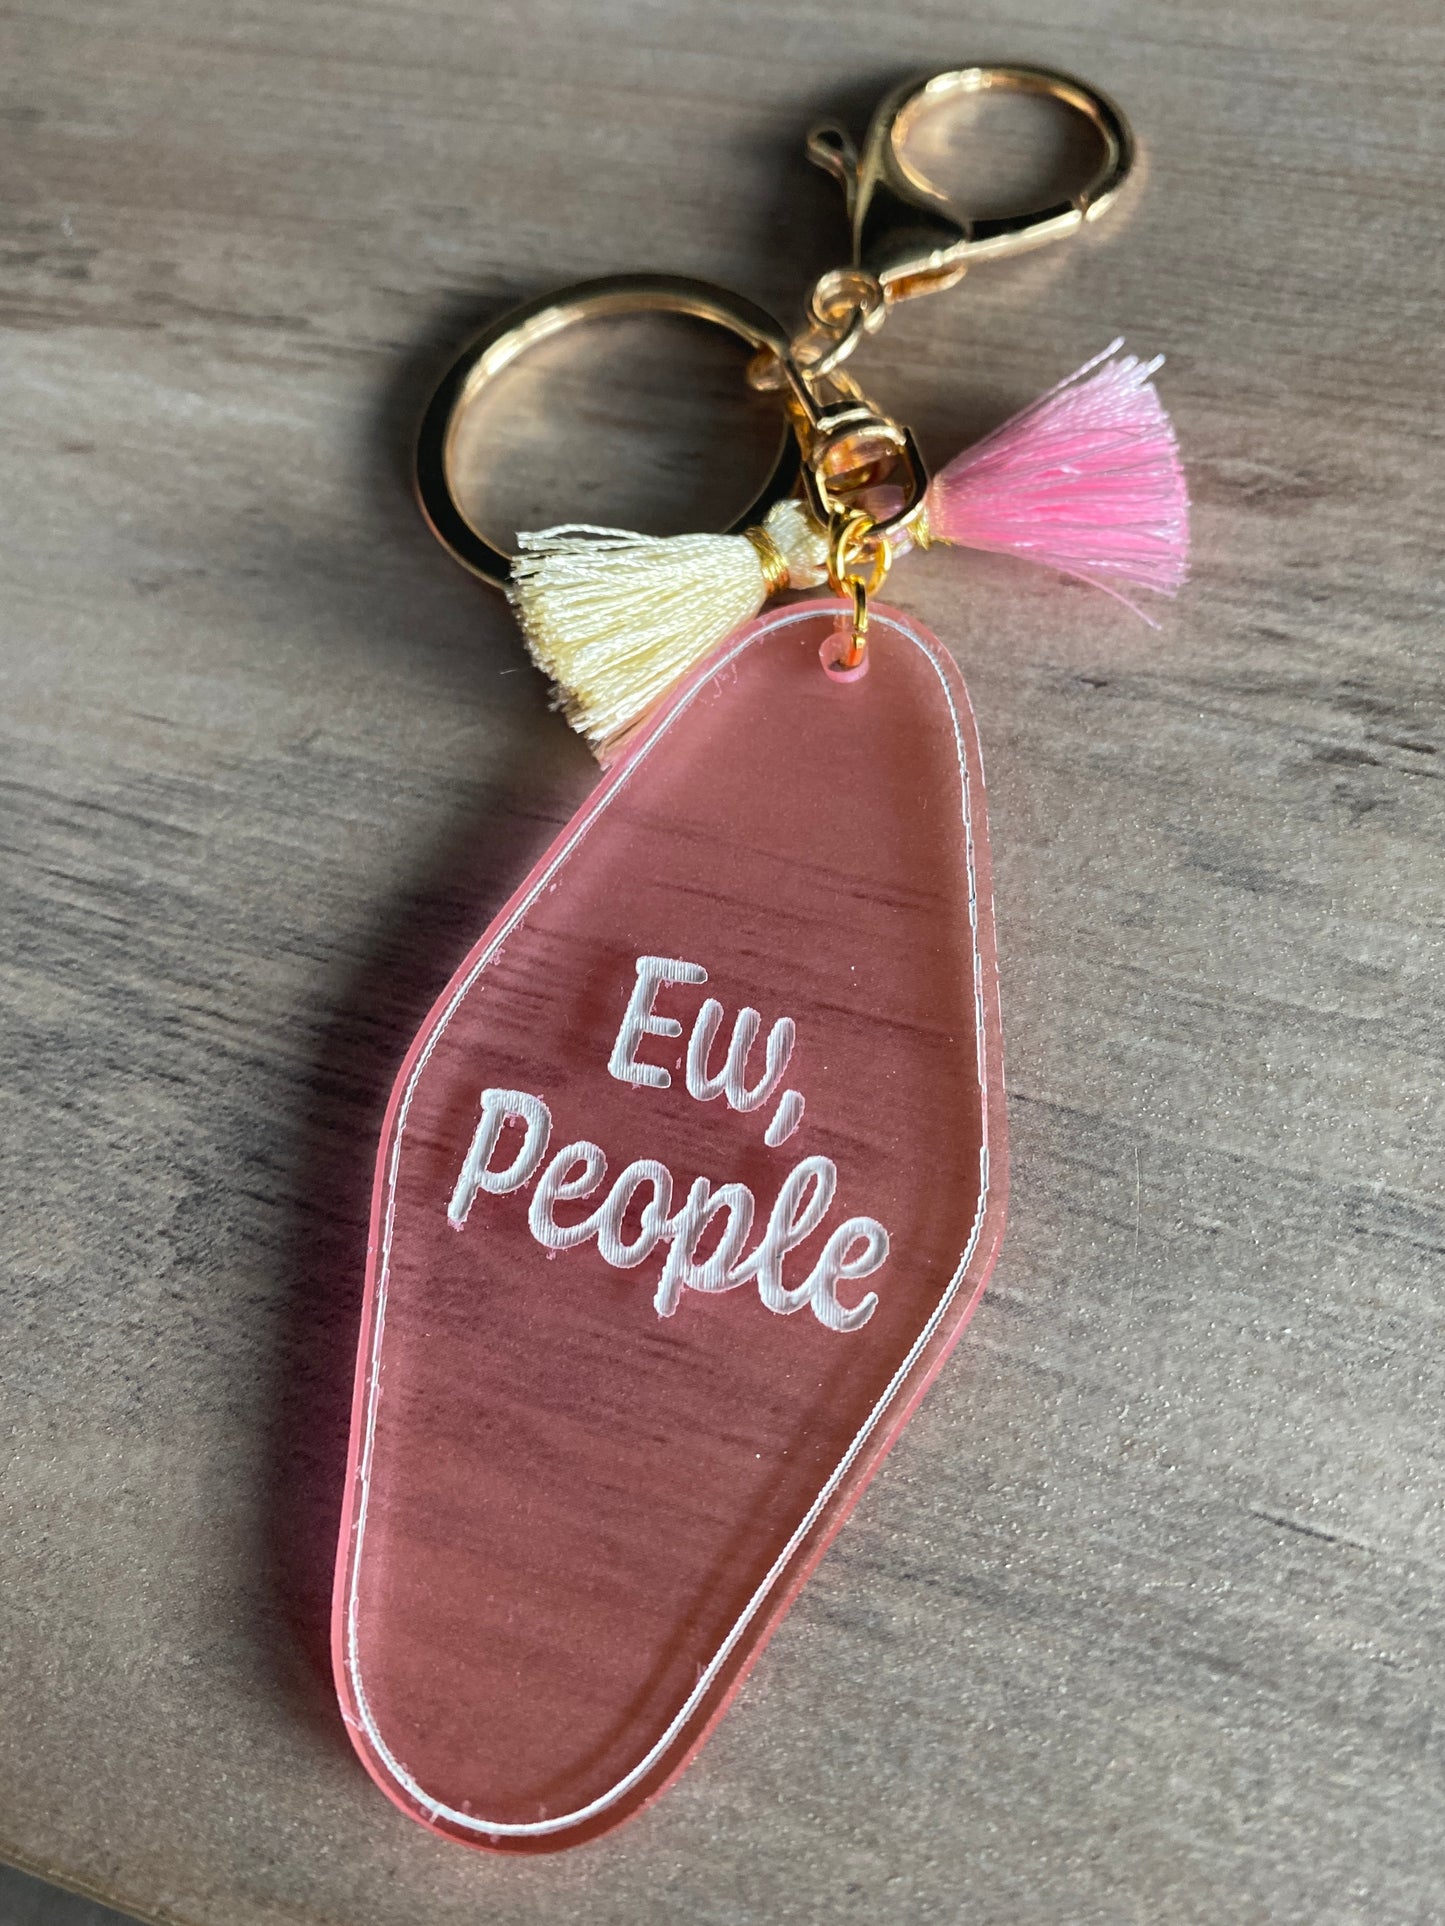 Ew, People - Vintage Style Acrylic Keychain